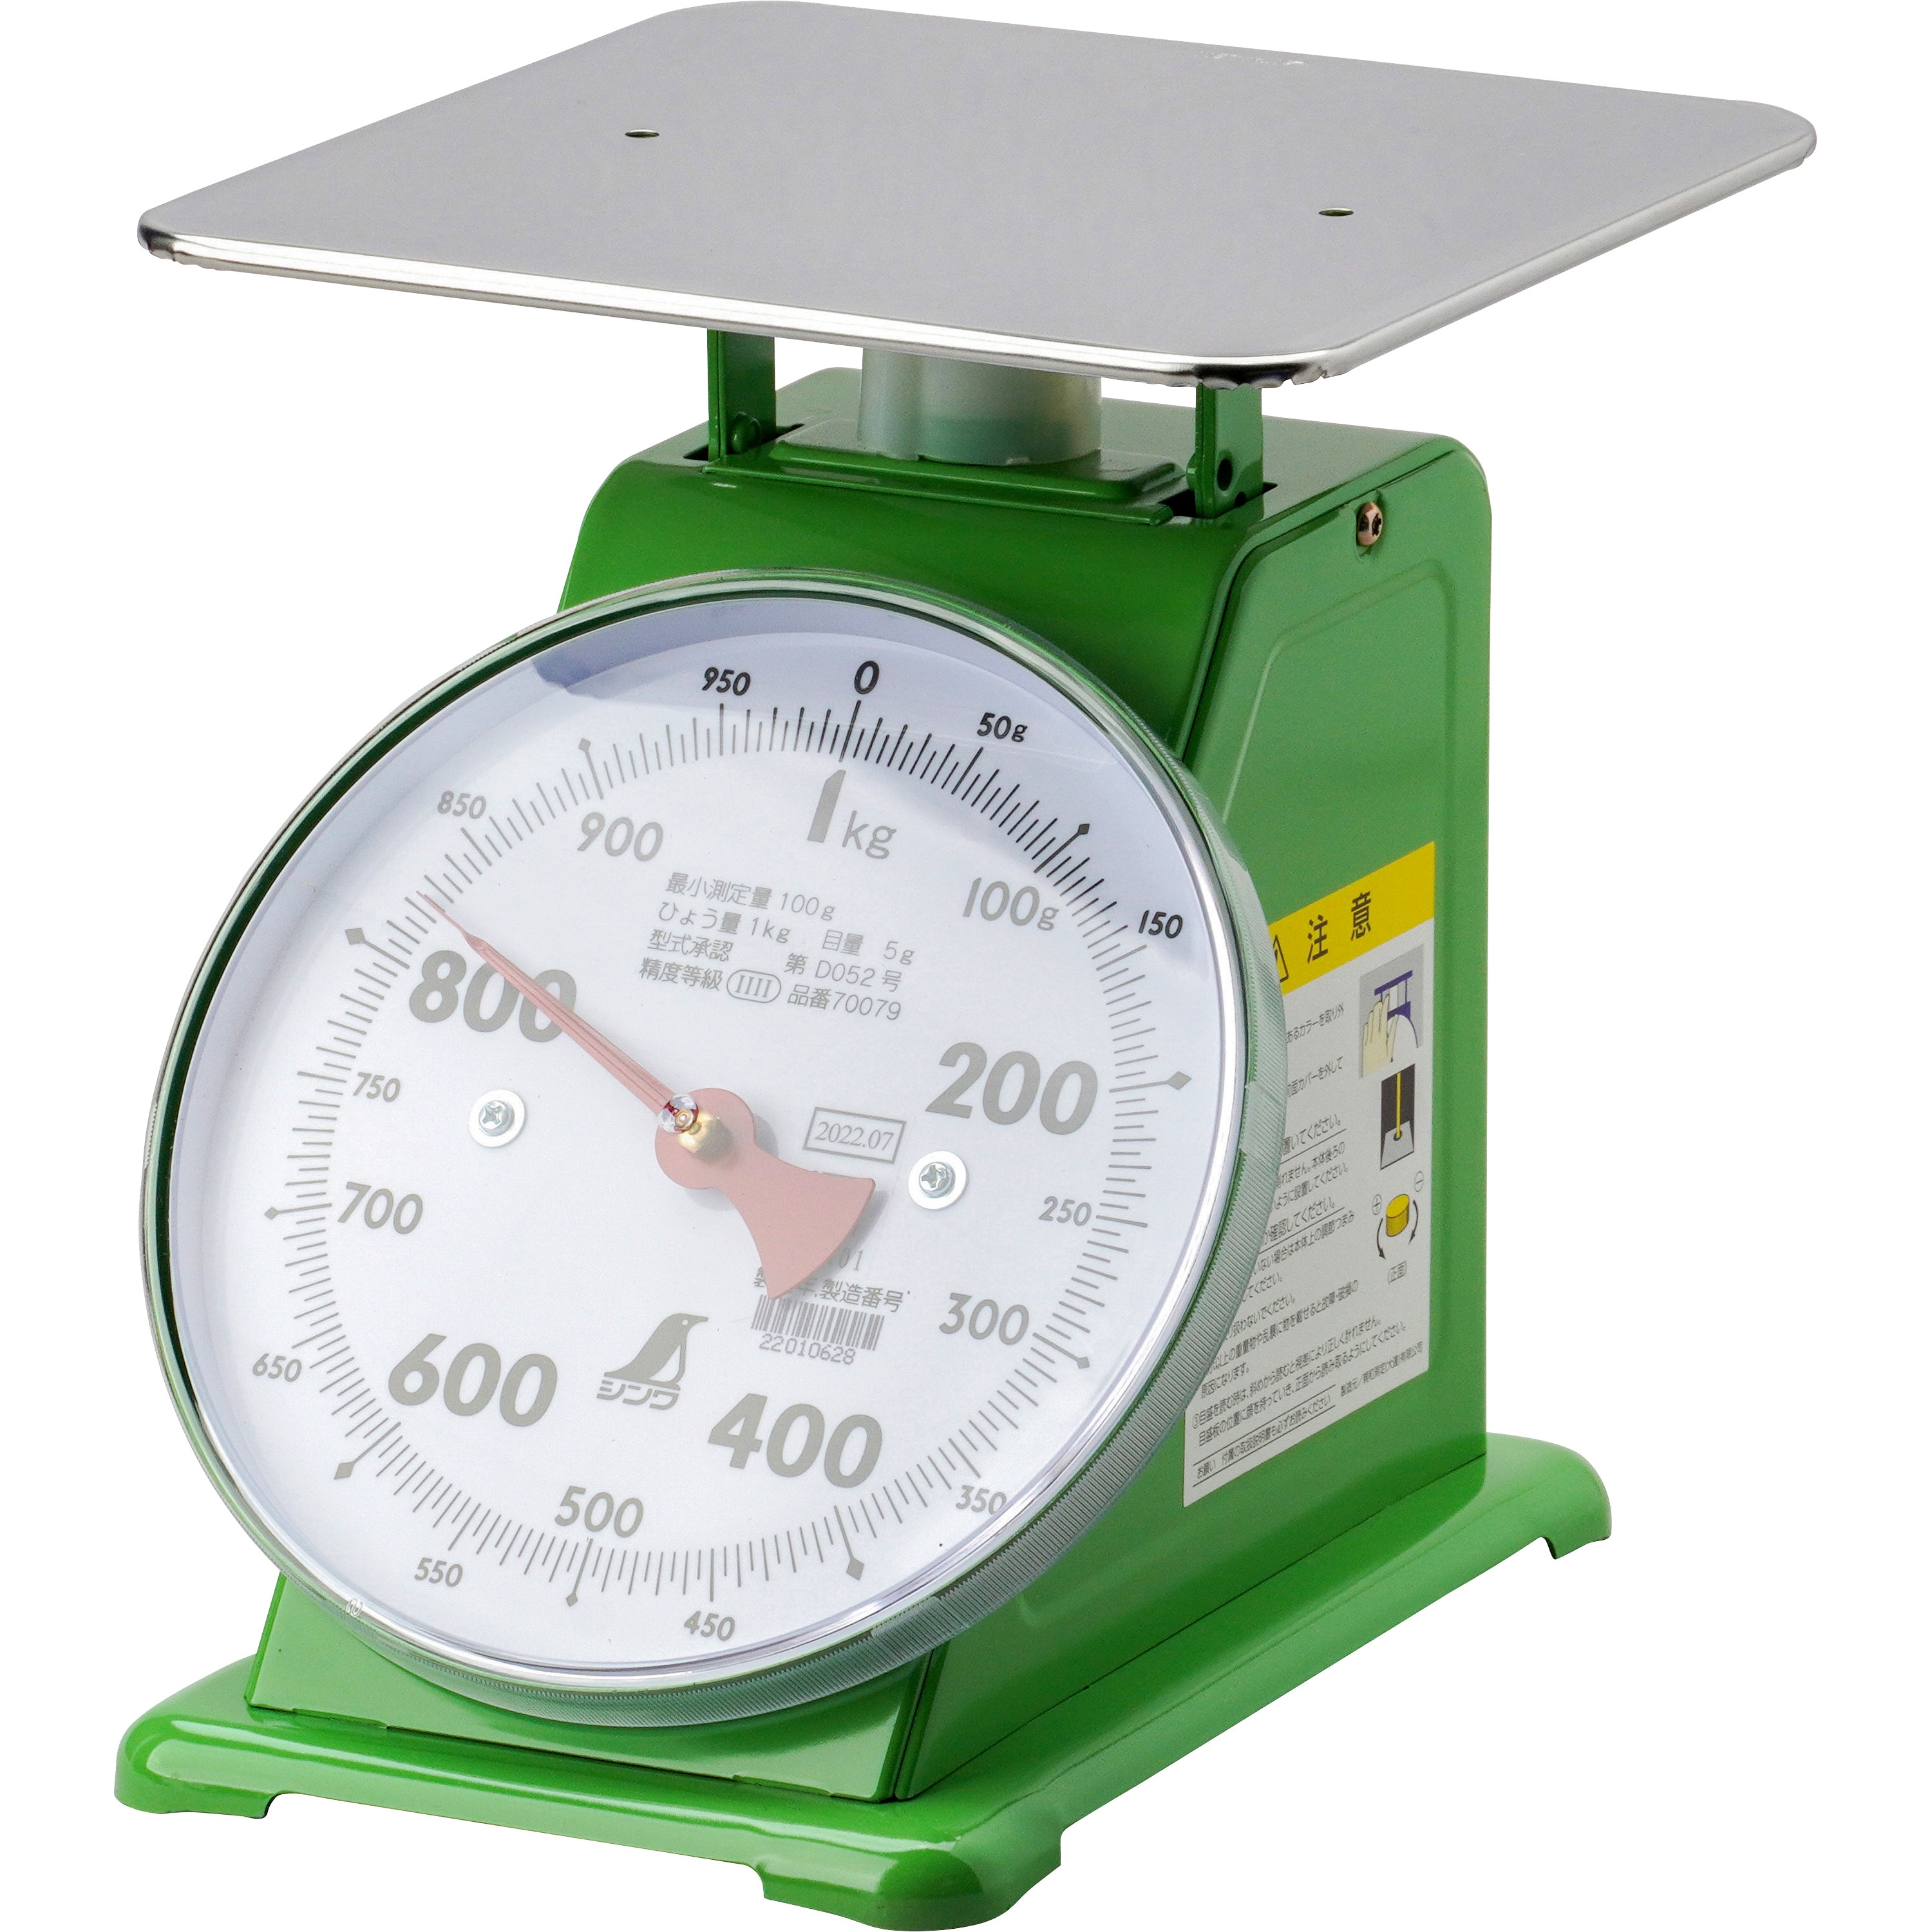 大和製衡 特大型上皿はかりYSD-30(30kg) BHK6830 - 計測、検査